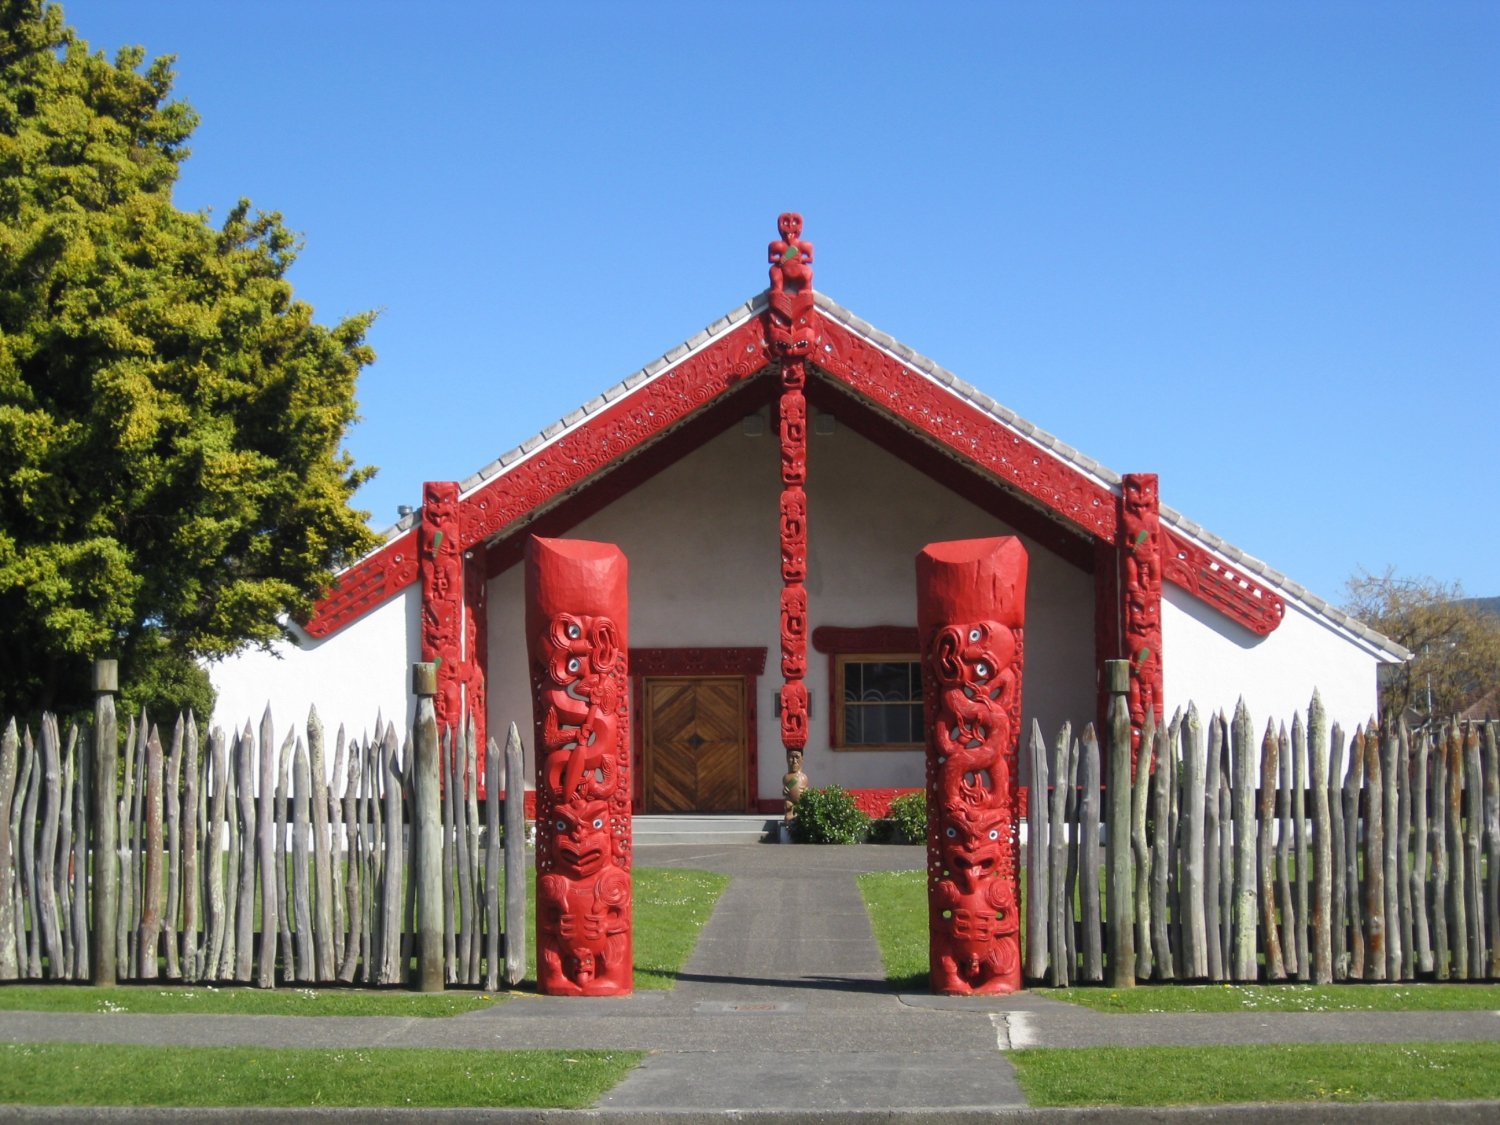 Celebrating Waitangi Day 2020